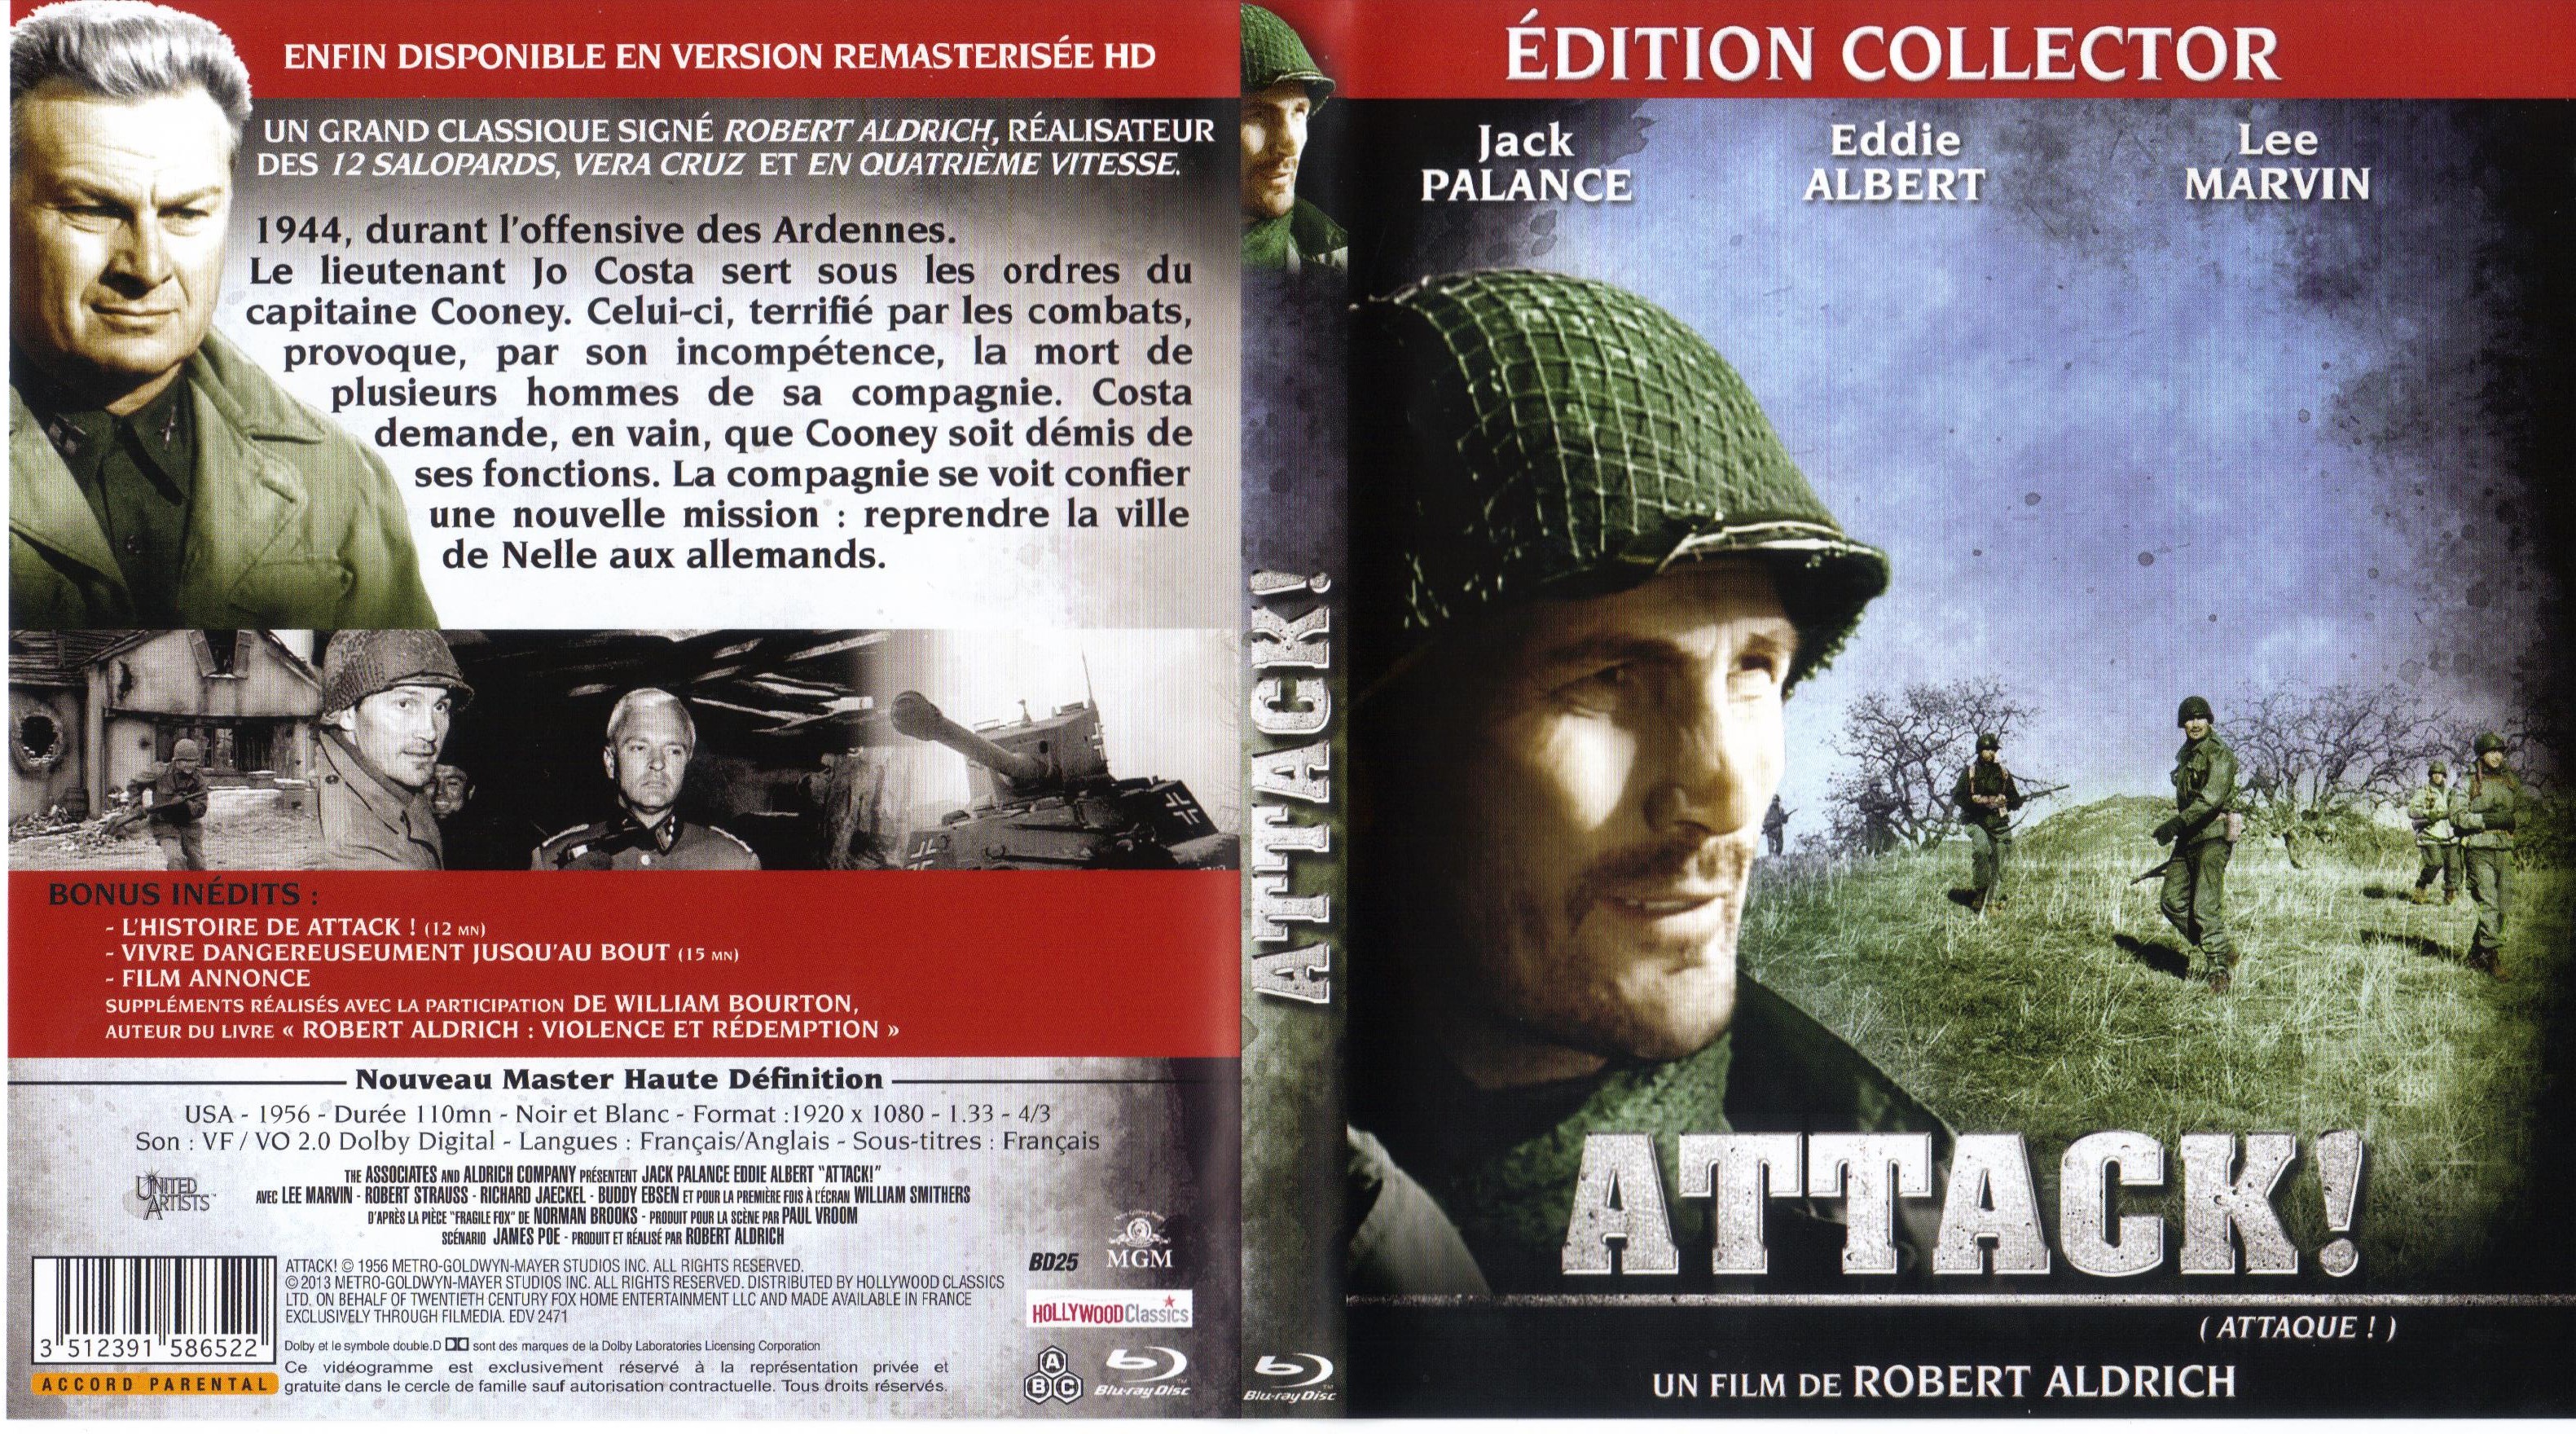 Jaquette DVD Attaque (BLU-RAY)